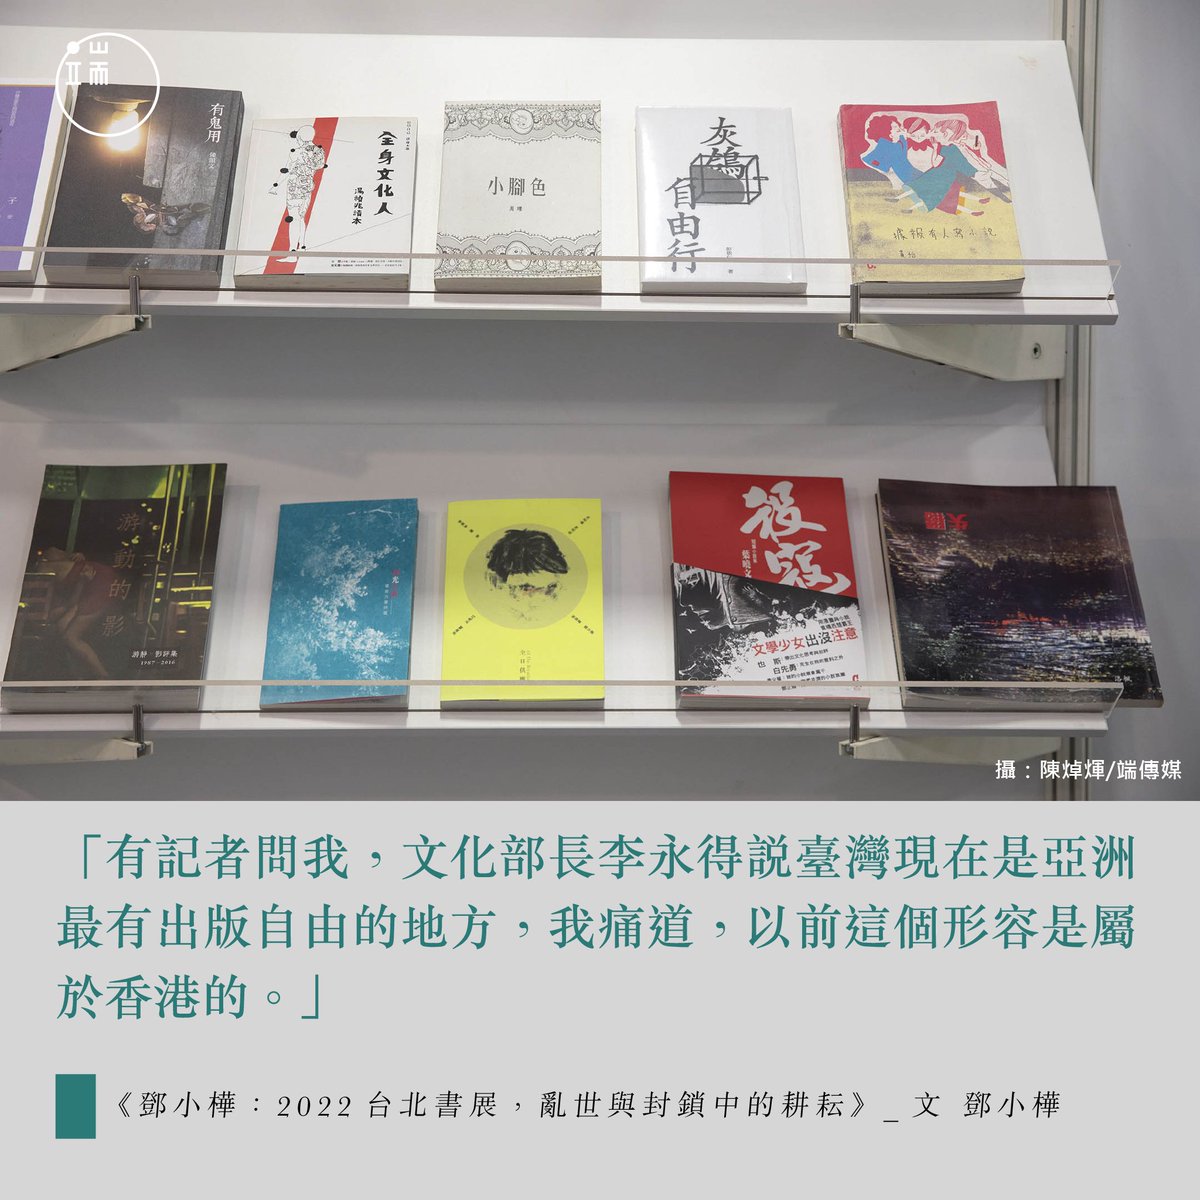 【「亞洲最有出版自由的地方」──這個形容「曾經」屬於香港】https://t.co/W2Ey2aJKKF 去年香港書展，有書商稱「政治書已經清零」。見此， 希望臺灣出版界及巿場能夠包容這些，也